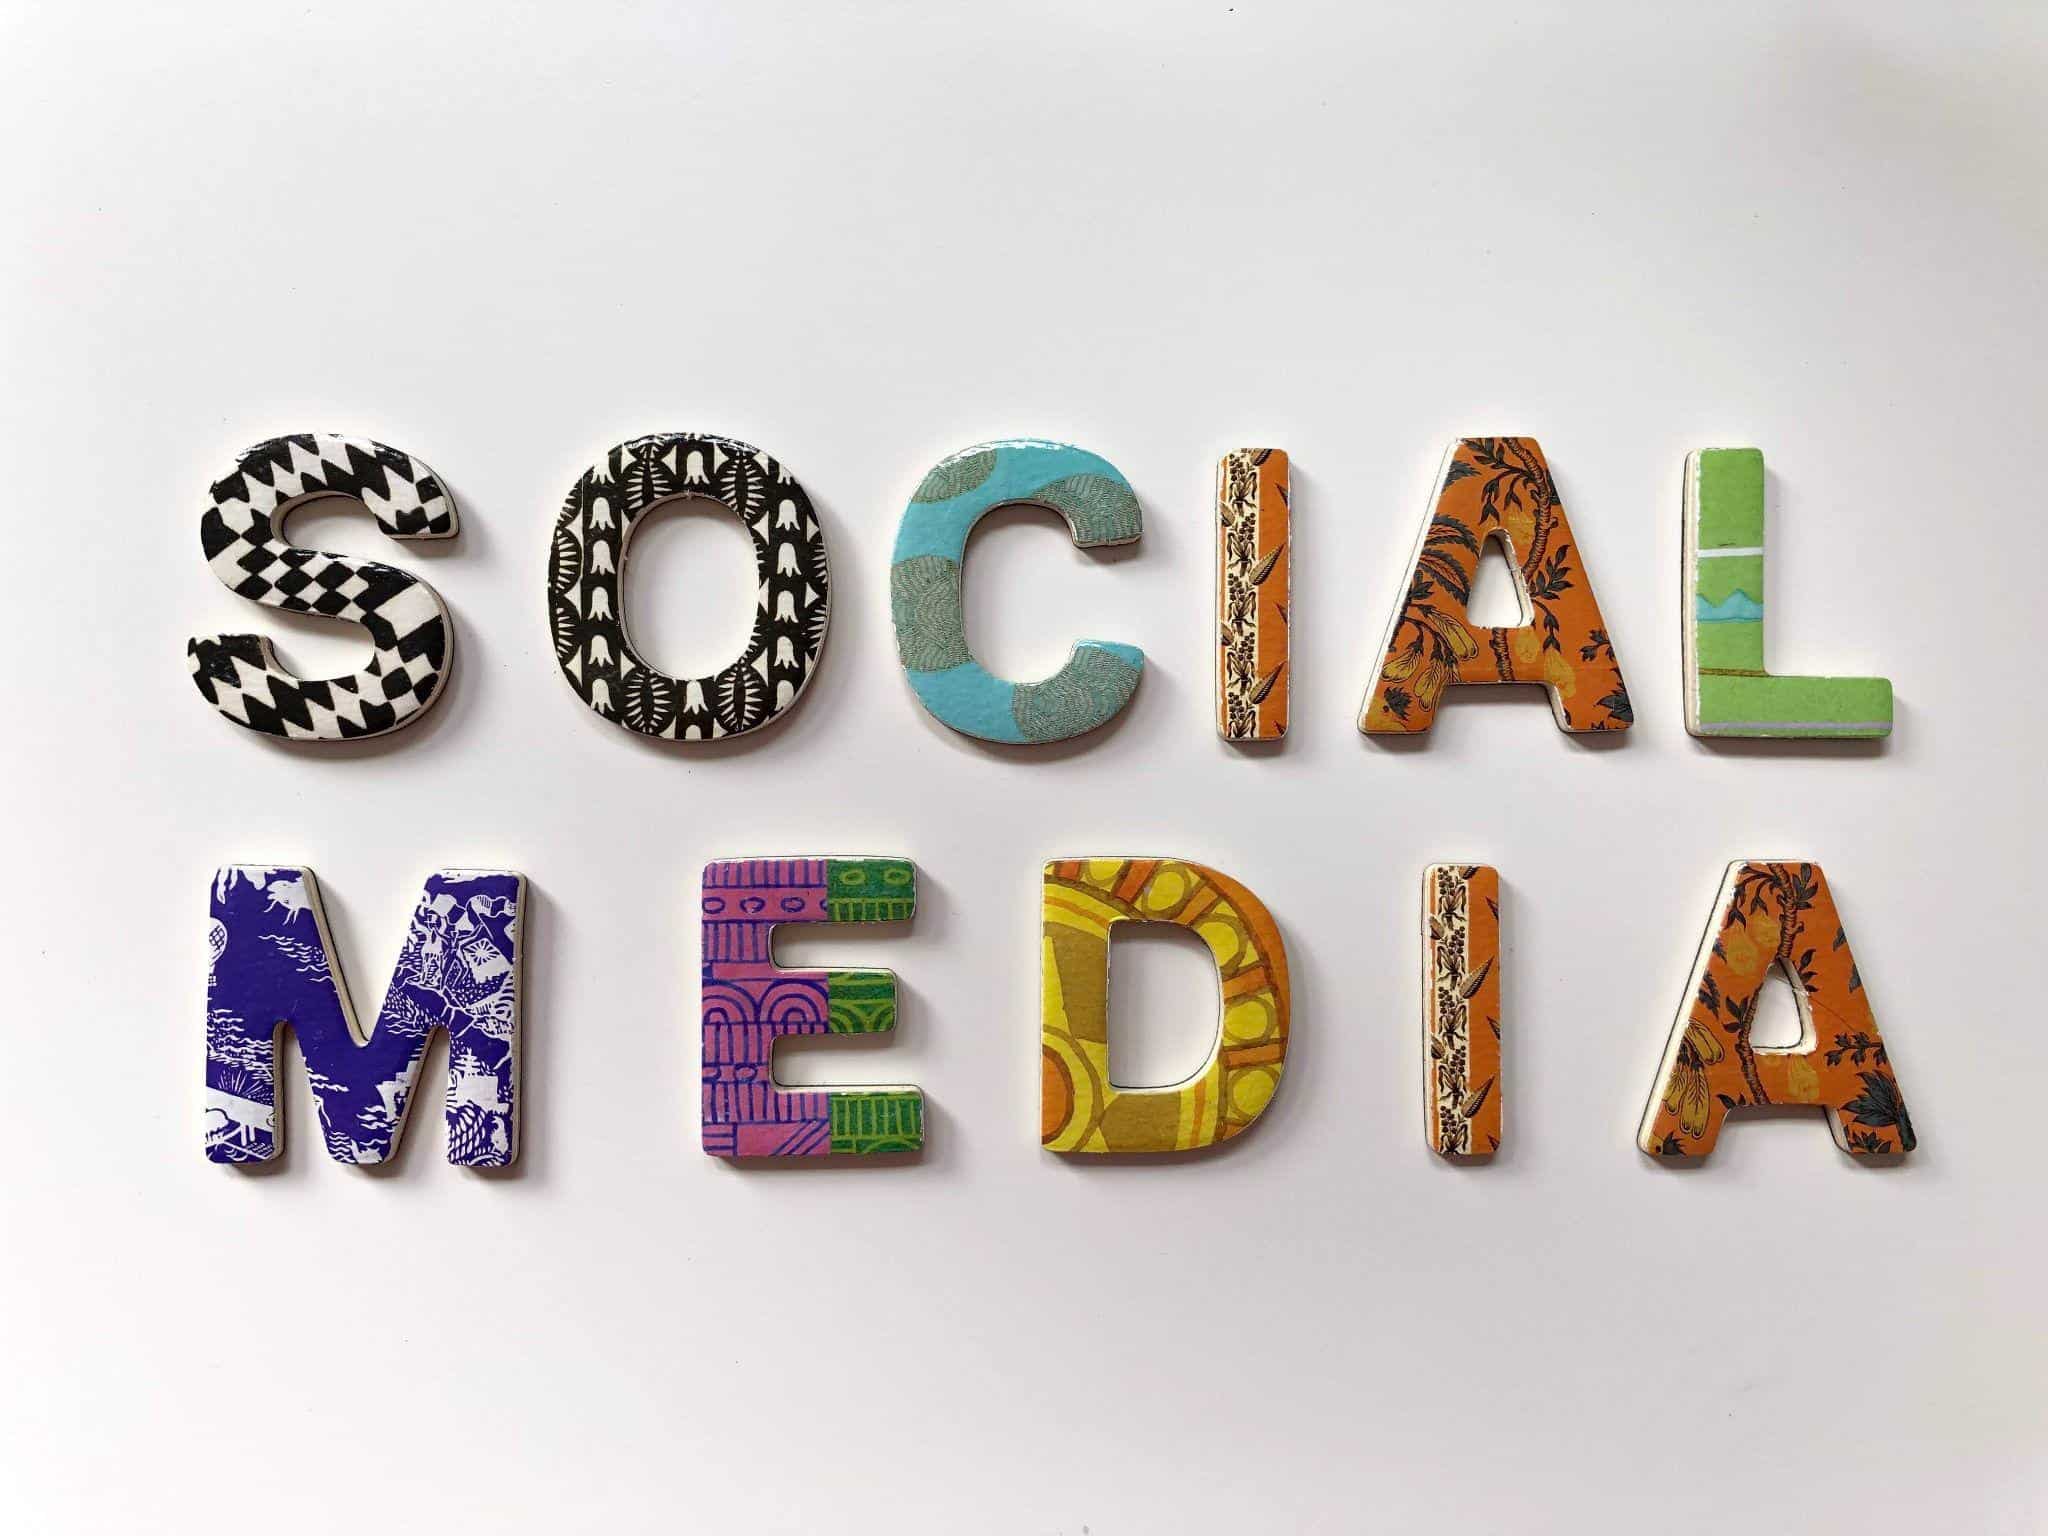 social media strategy examples - 10 Killer Social Media Strategy Examples - 5